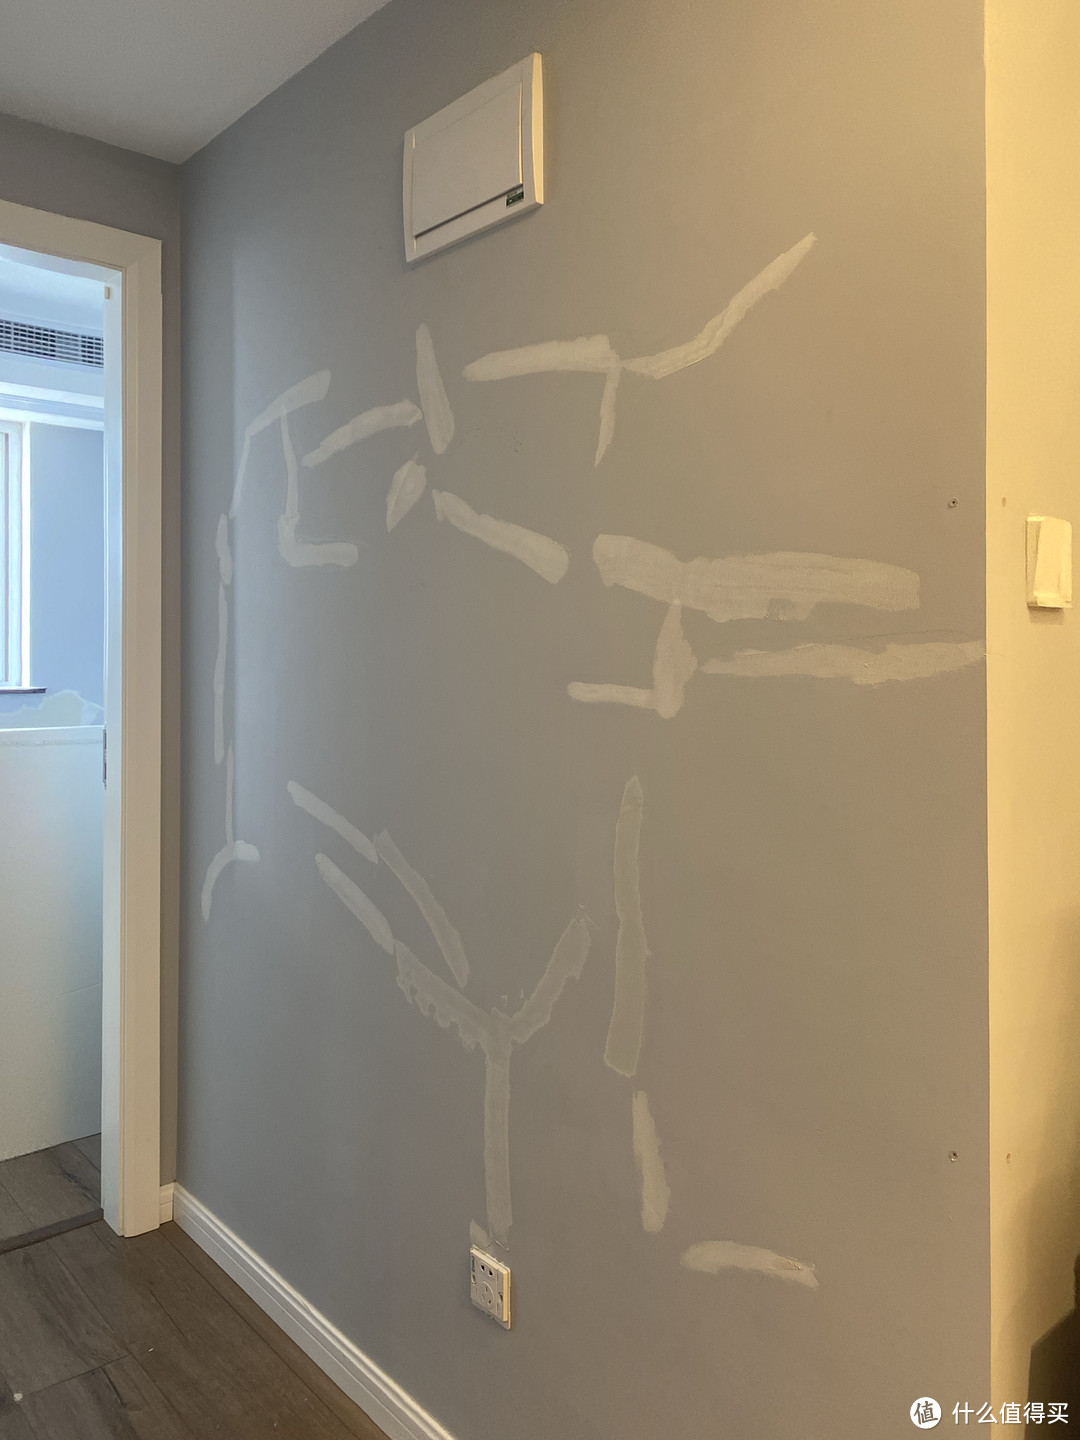 【墙面改造计划】3年后墙面大改色，100%满意的一次乳胶漆众测体验。